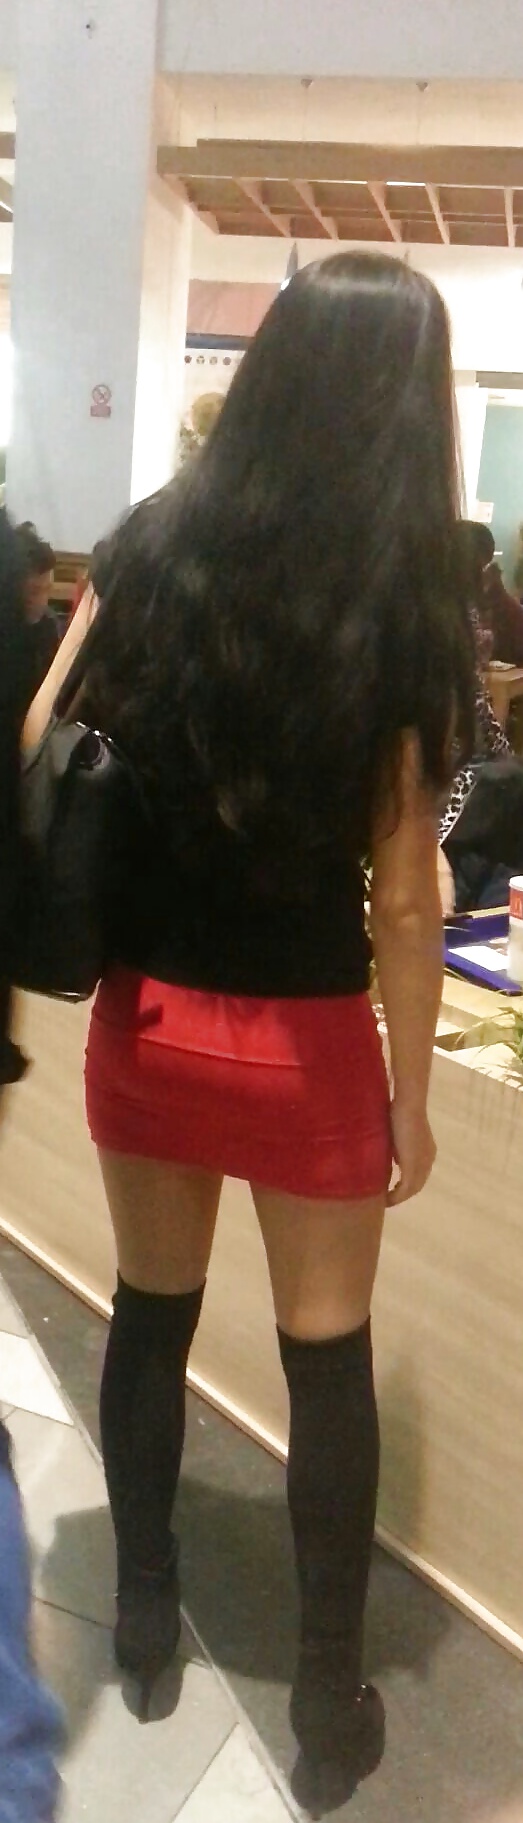 Spy mini falda sexy jóvenes en el centro comercial rumano
 #39540235